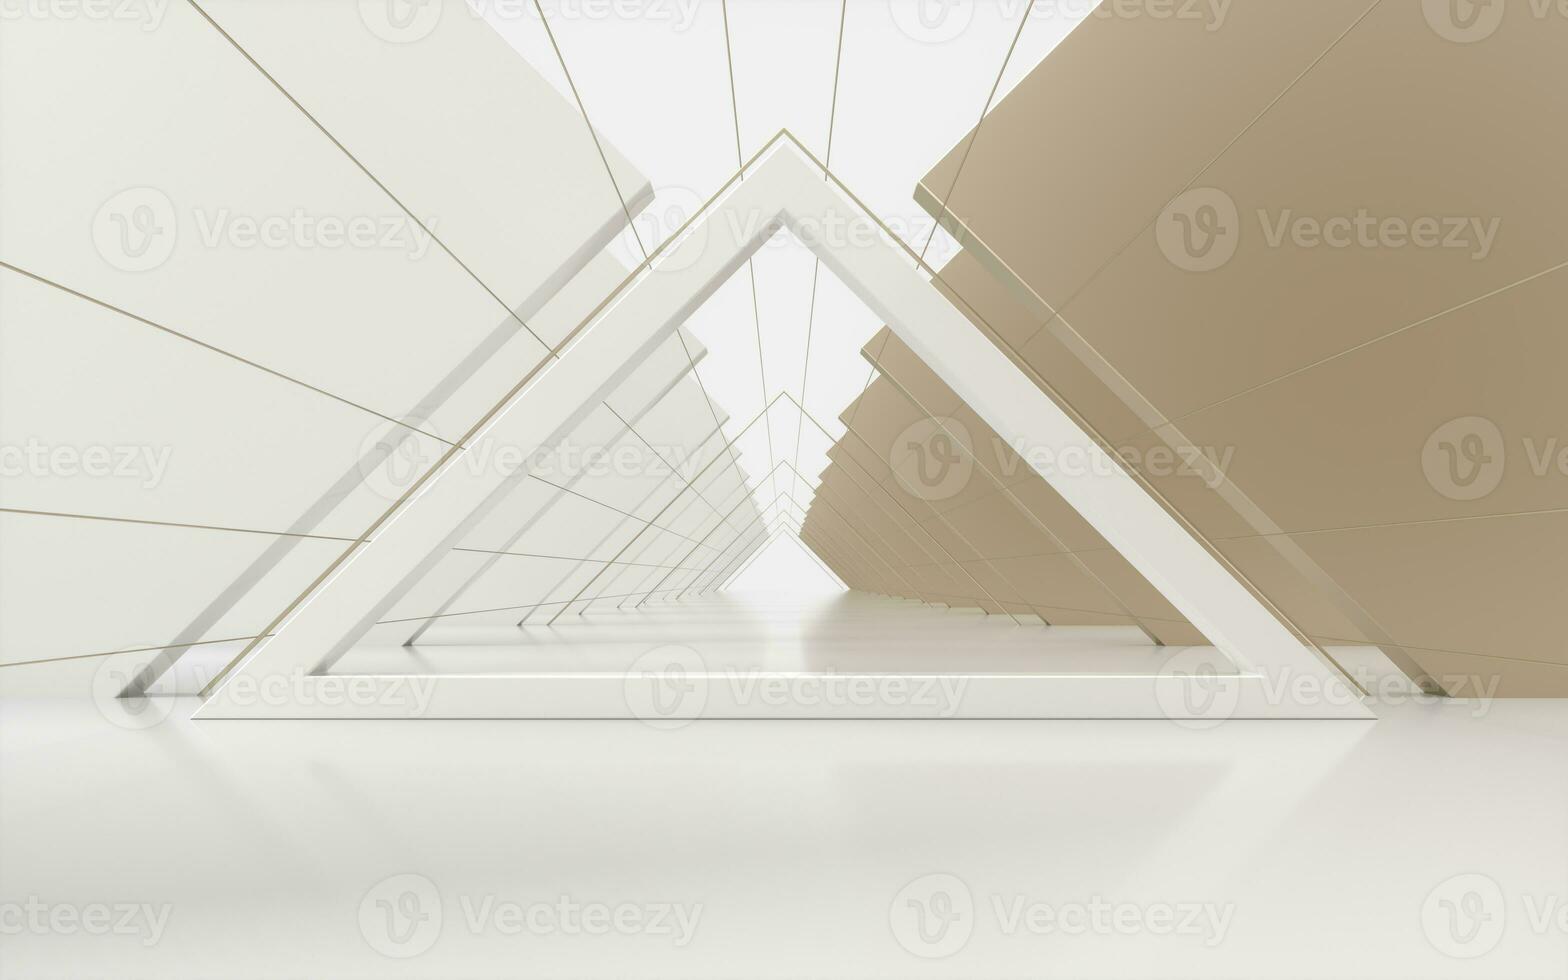 triángulo túnel con cubitos en lados, 3d representación. foto